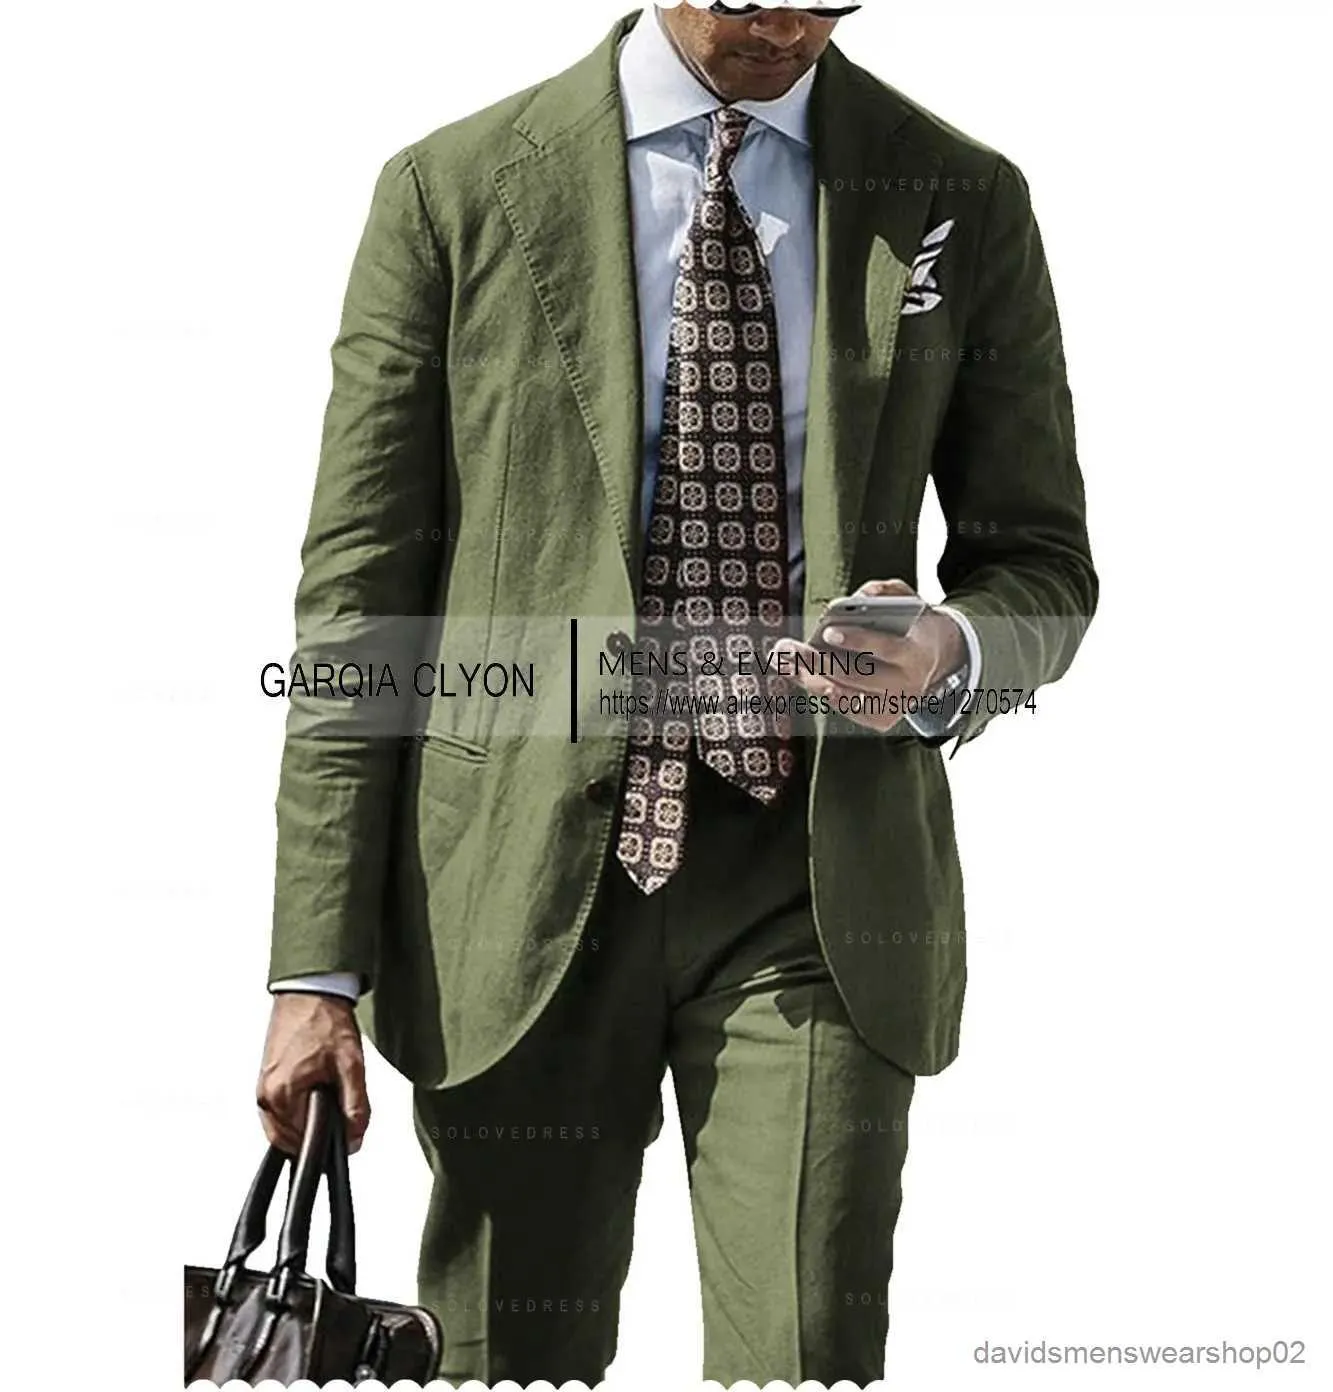 Garnitury męskie Blazery lniane mężczyźni pozbawione inteligentne przyczynowe dopasowanie 2 sztuki męskie eleganckie zestawy marynarki płaszcz odzieży podzielone spodnie najnowsze garnitury dla mężczyzn